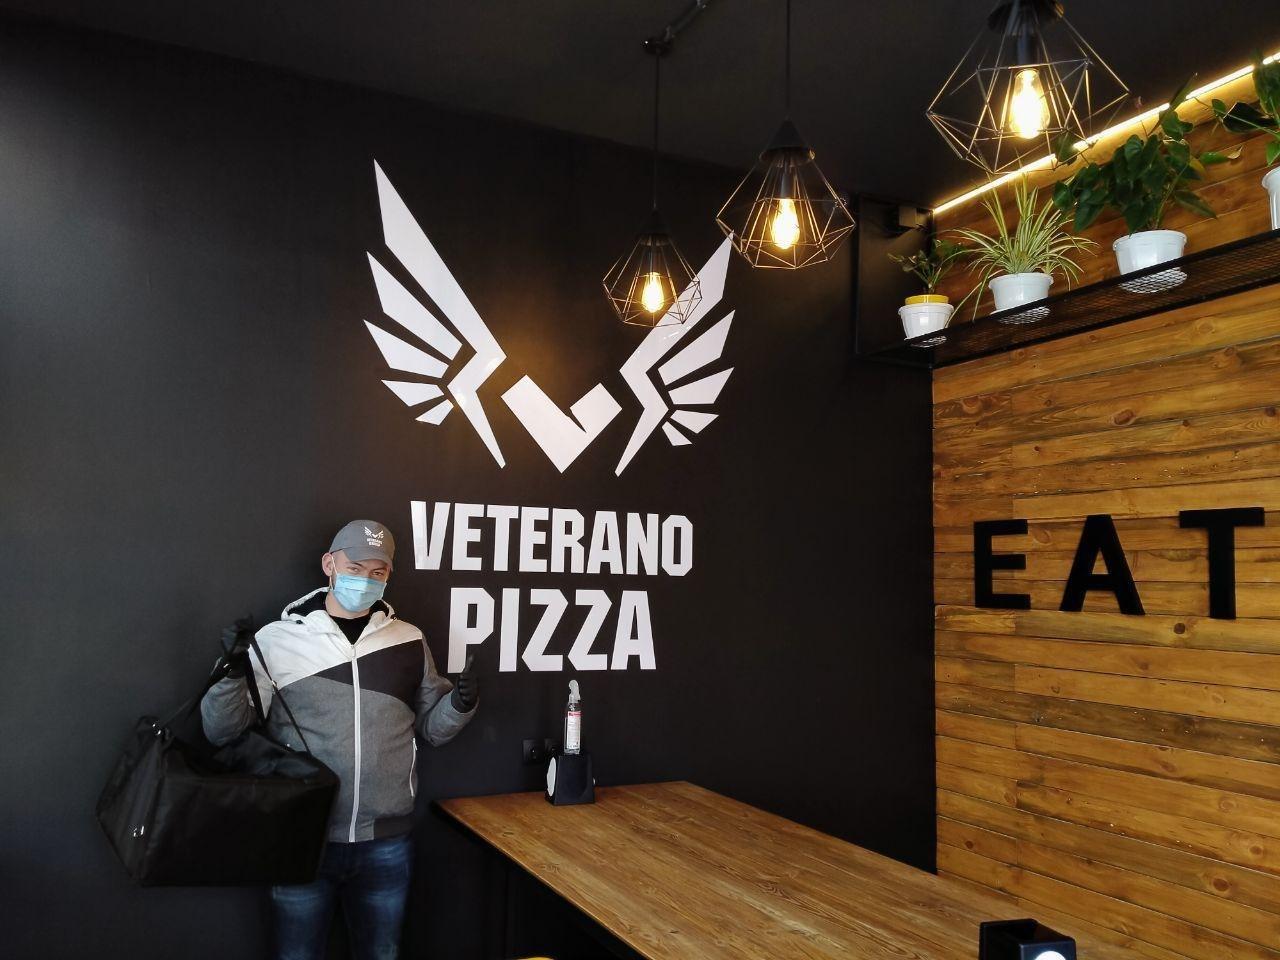 Veterano Pizza arrived in Odessa!